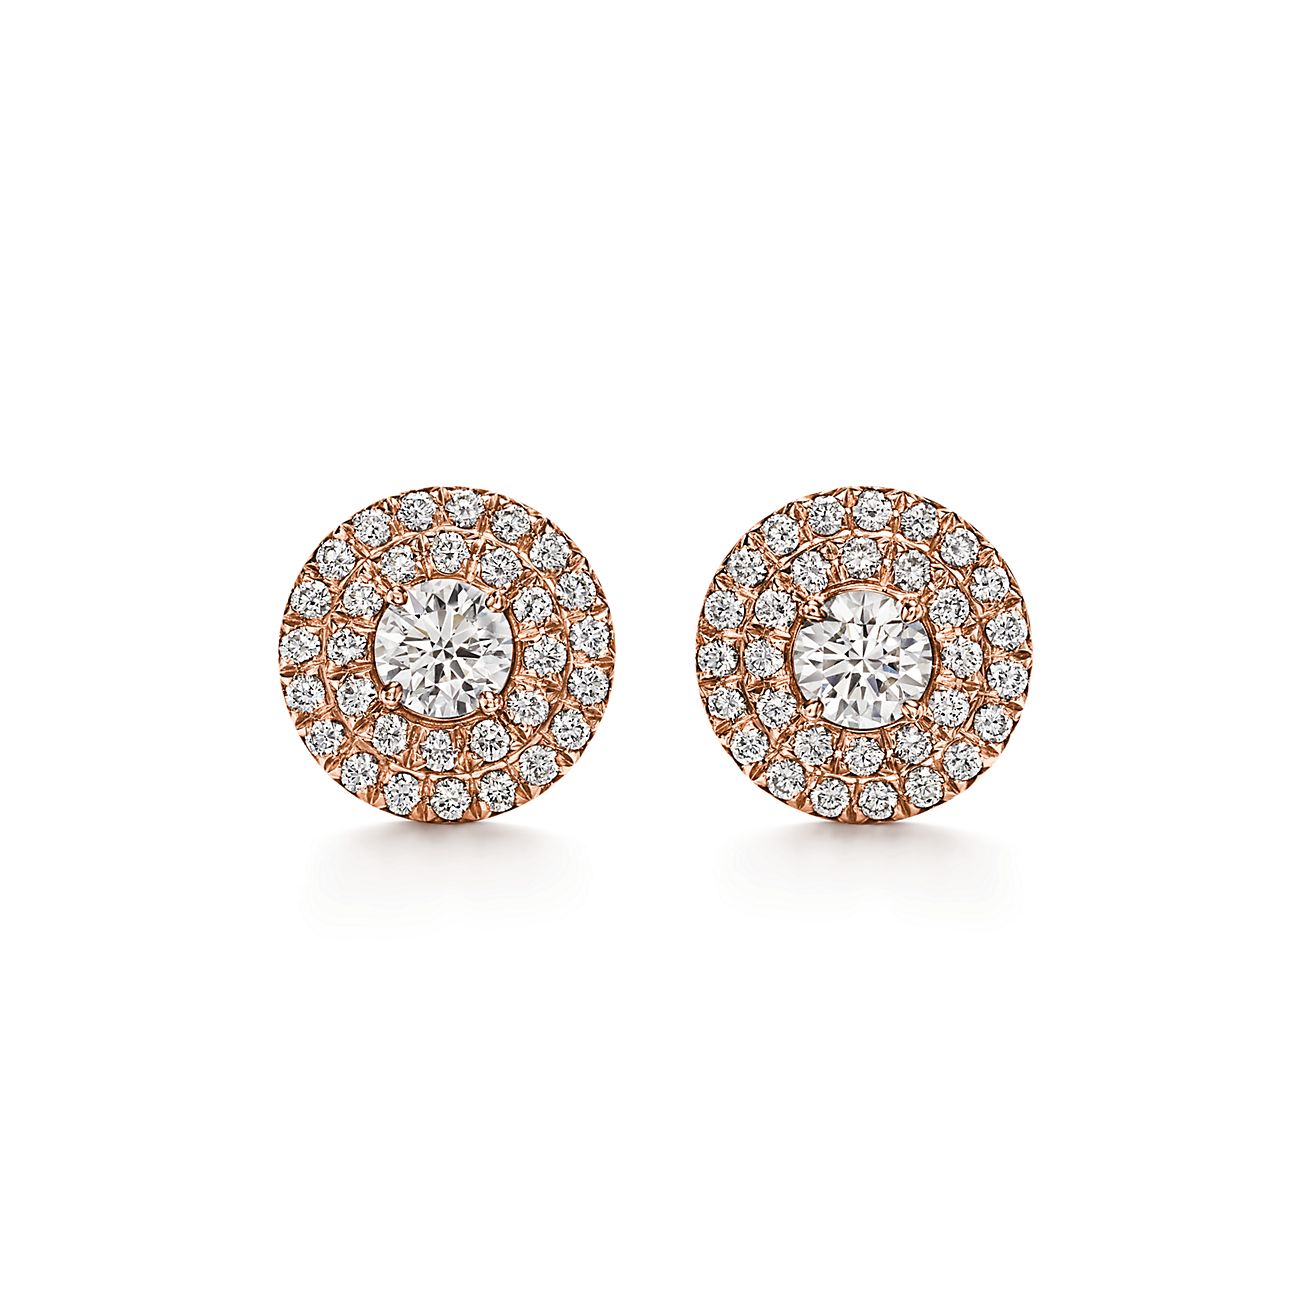 Tiffany Soleste earrings in 18k rose gold with diamonds. | Tiffany & Co.